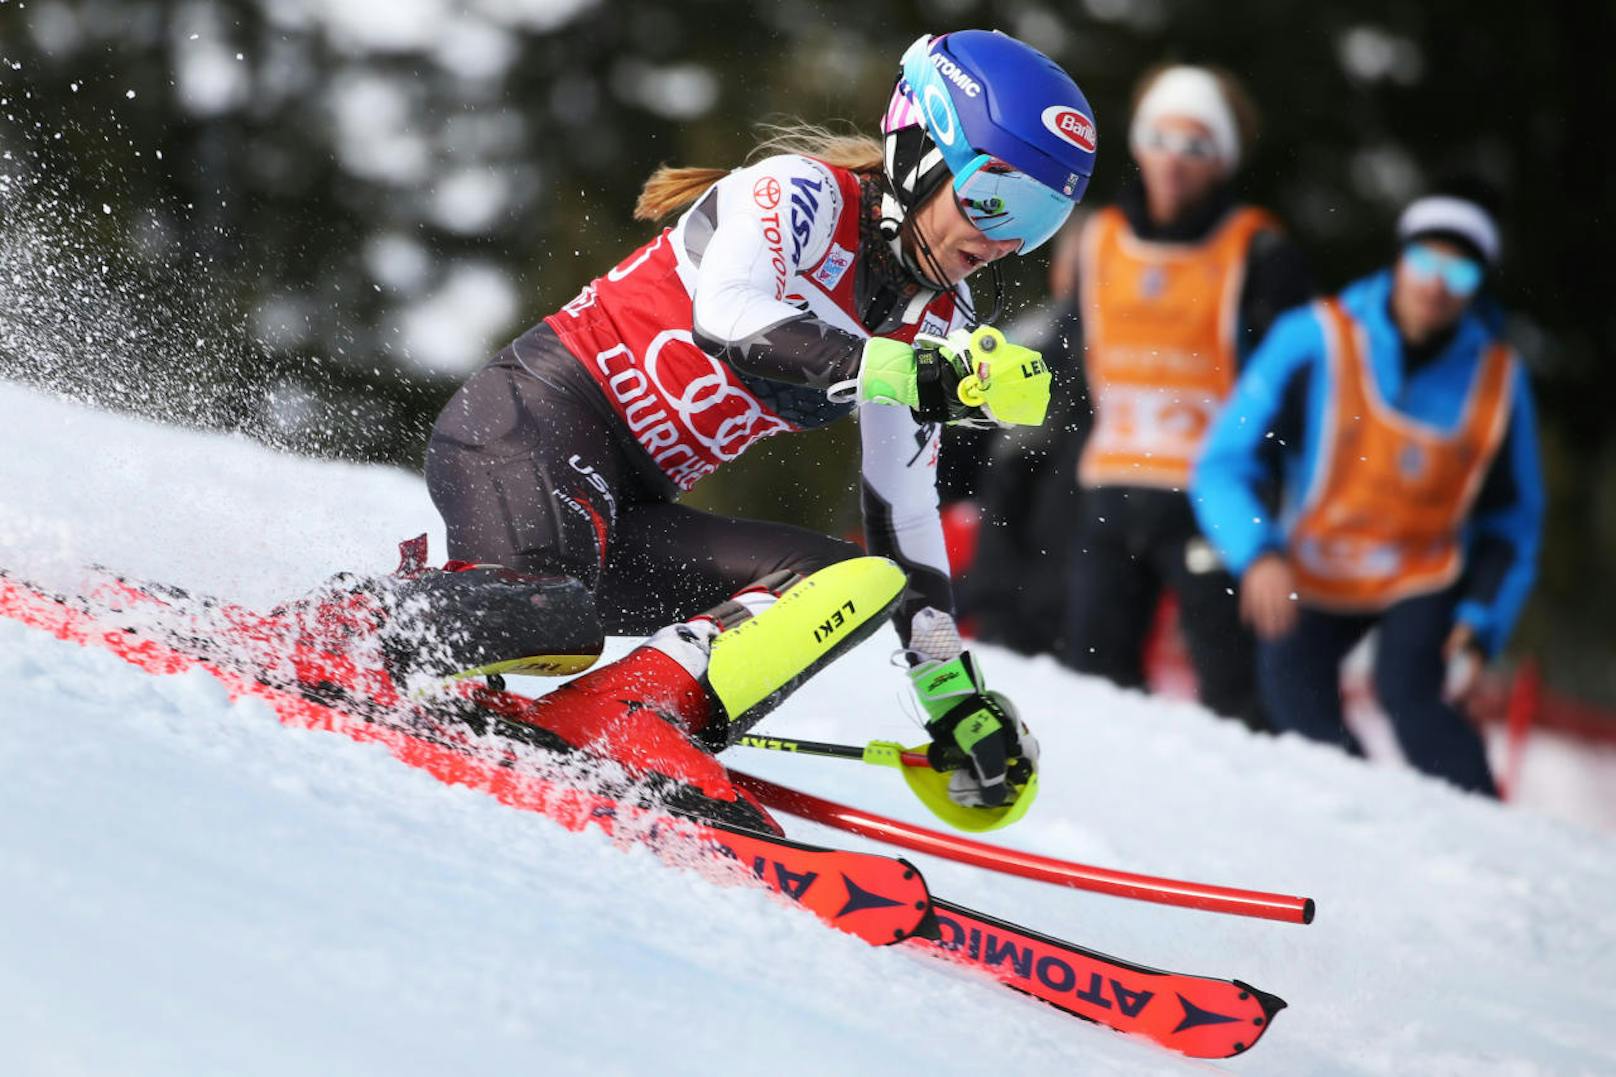 Der Siegeszug von Shiffrin ging weiter. Die 23-Jährige gewann auch den Slalom von Courchevel. Es war der 50. Weltcupsieg für die US-Amerikanerin. Mit dem Triumph stellte sie den Rekord von 35 Slalom-Erfolgen von Marlies Schild ein. 

<b><i>Courchevel, Slalom (22.12. 2018)</i></b>
1. Mikaela Shiffrin (US)
2. Petra Vlhova (Svk)
3. Frida Hansdotter (Swe)
<b>5. Katharina Liensberger</b>